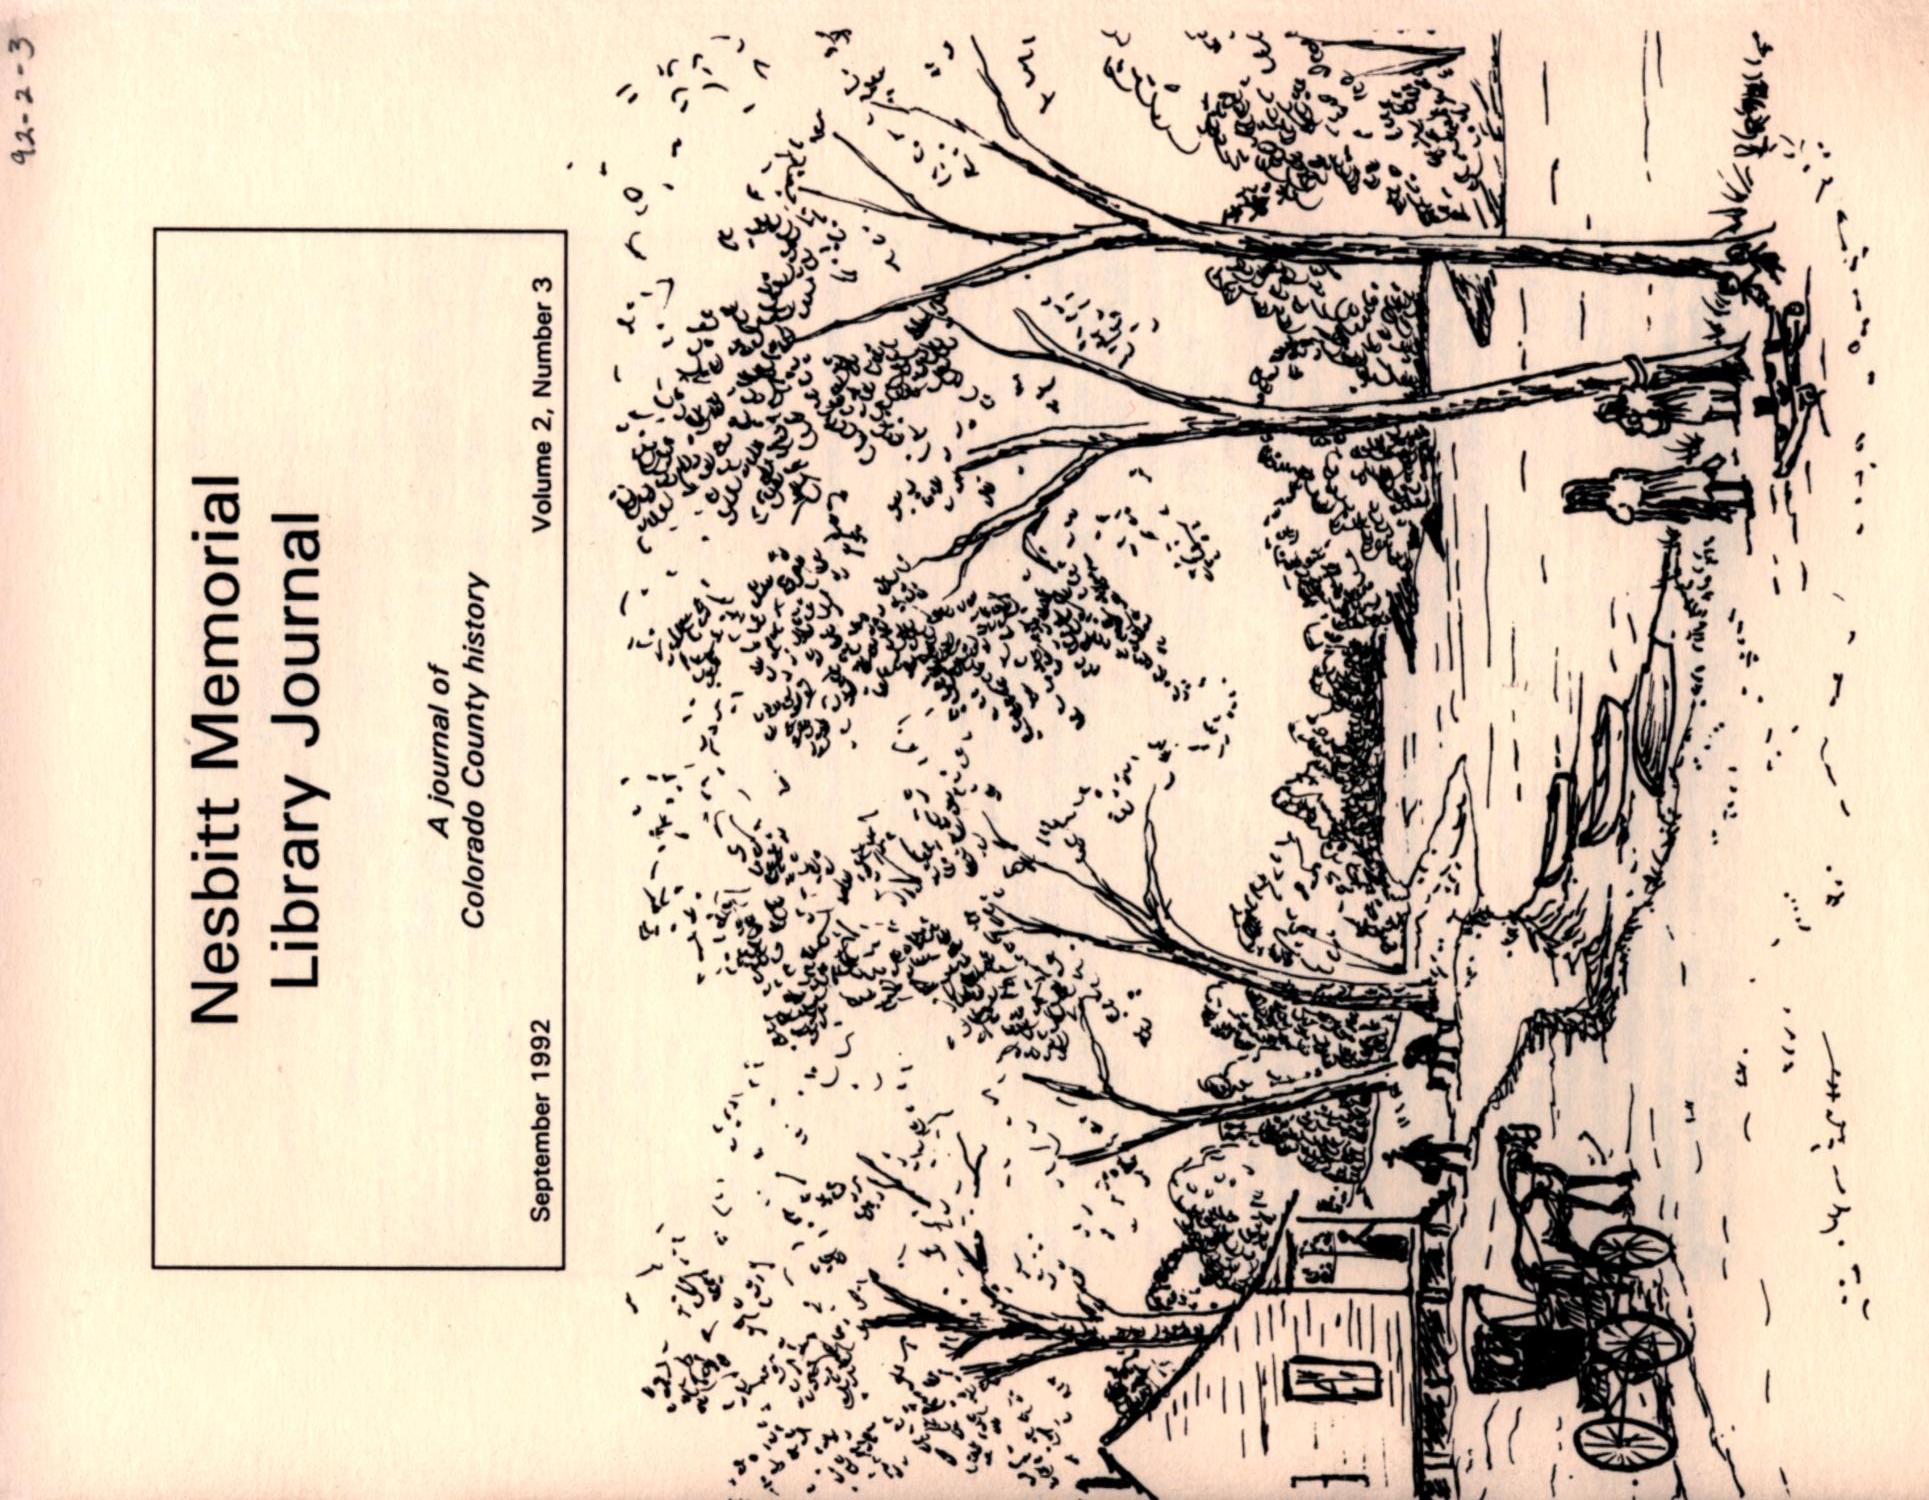 Nesbitt Memorial Library Journal, Volume 2, Number 3, September 1992
                                                
                                                    Front Cover
                                                